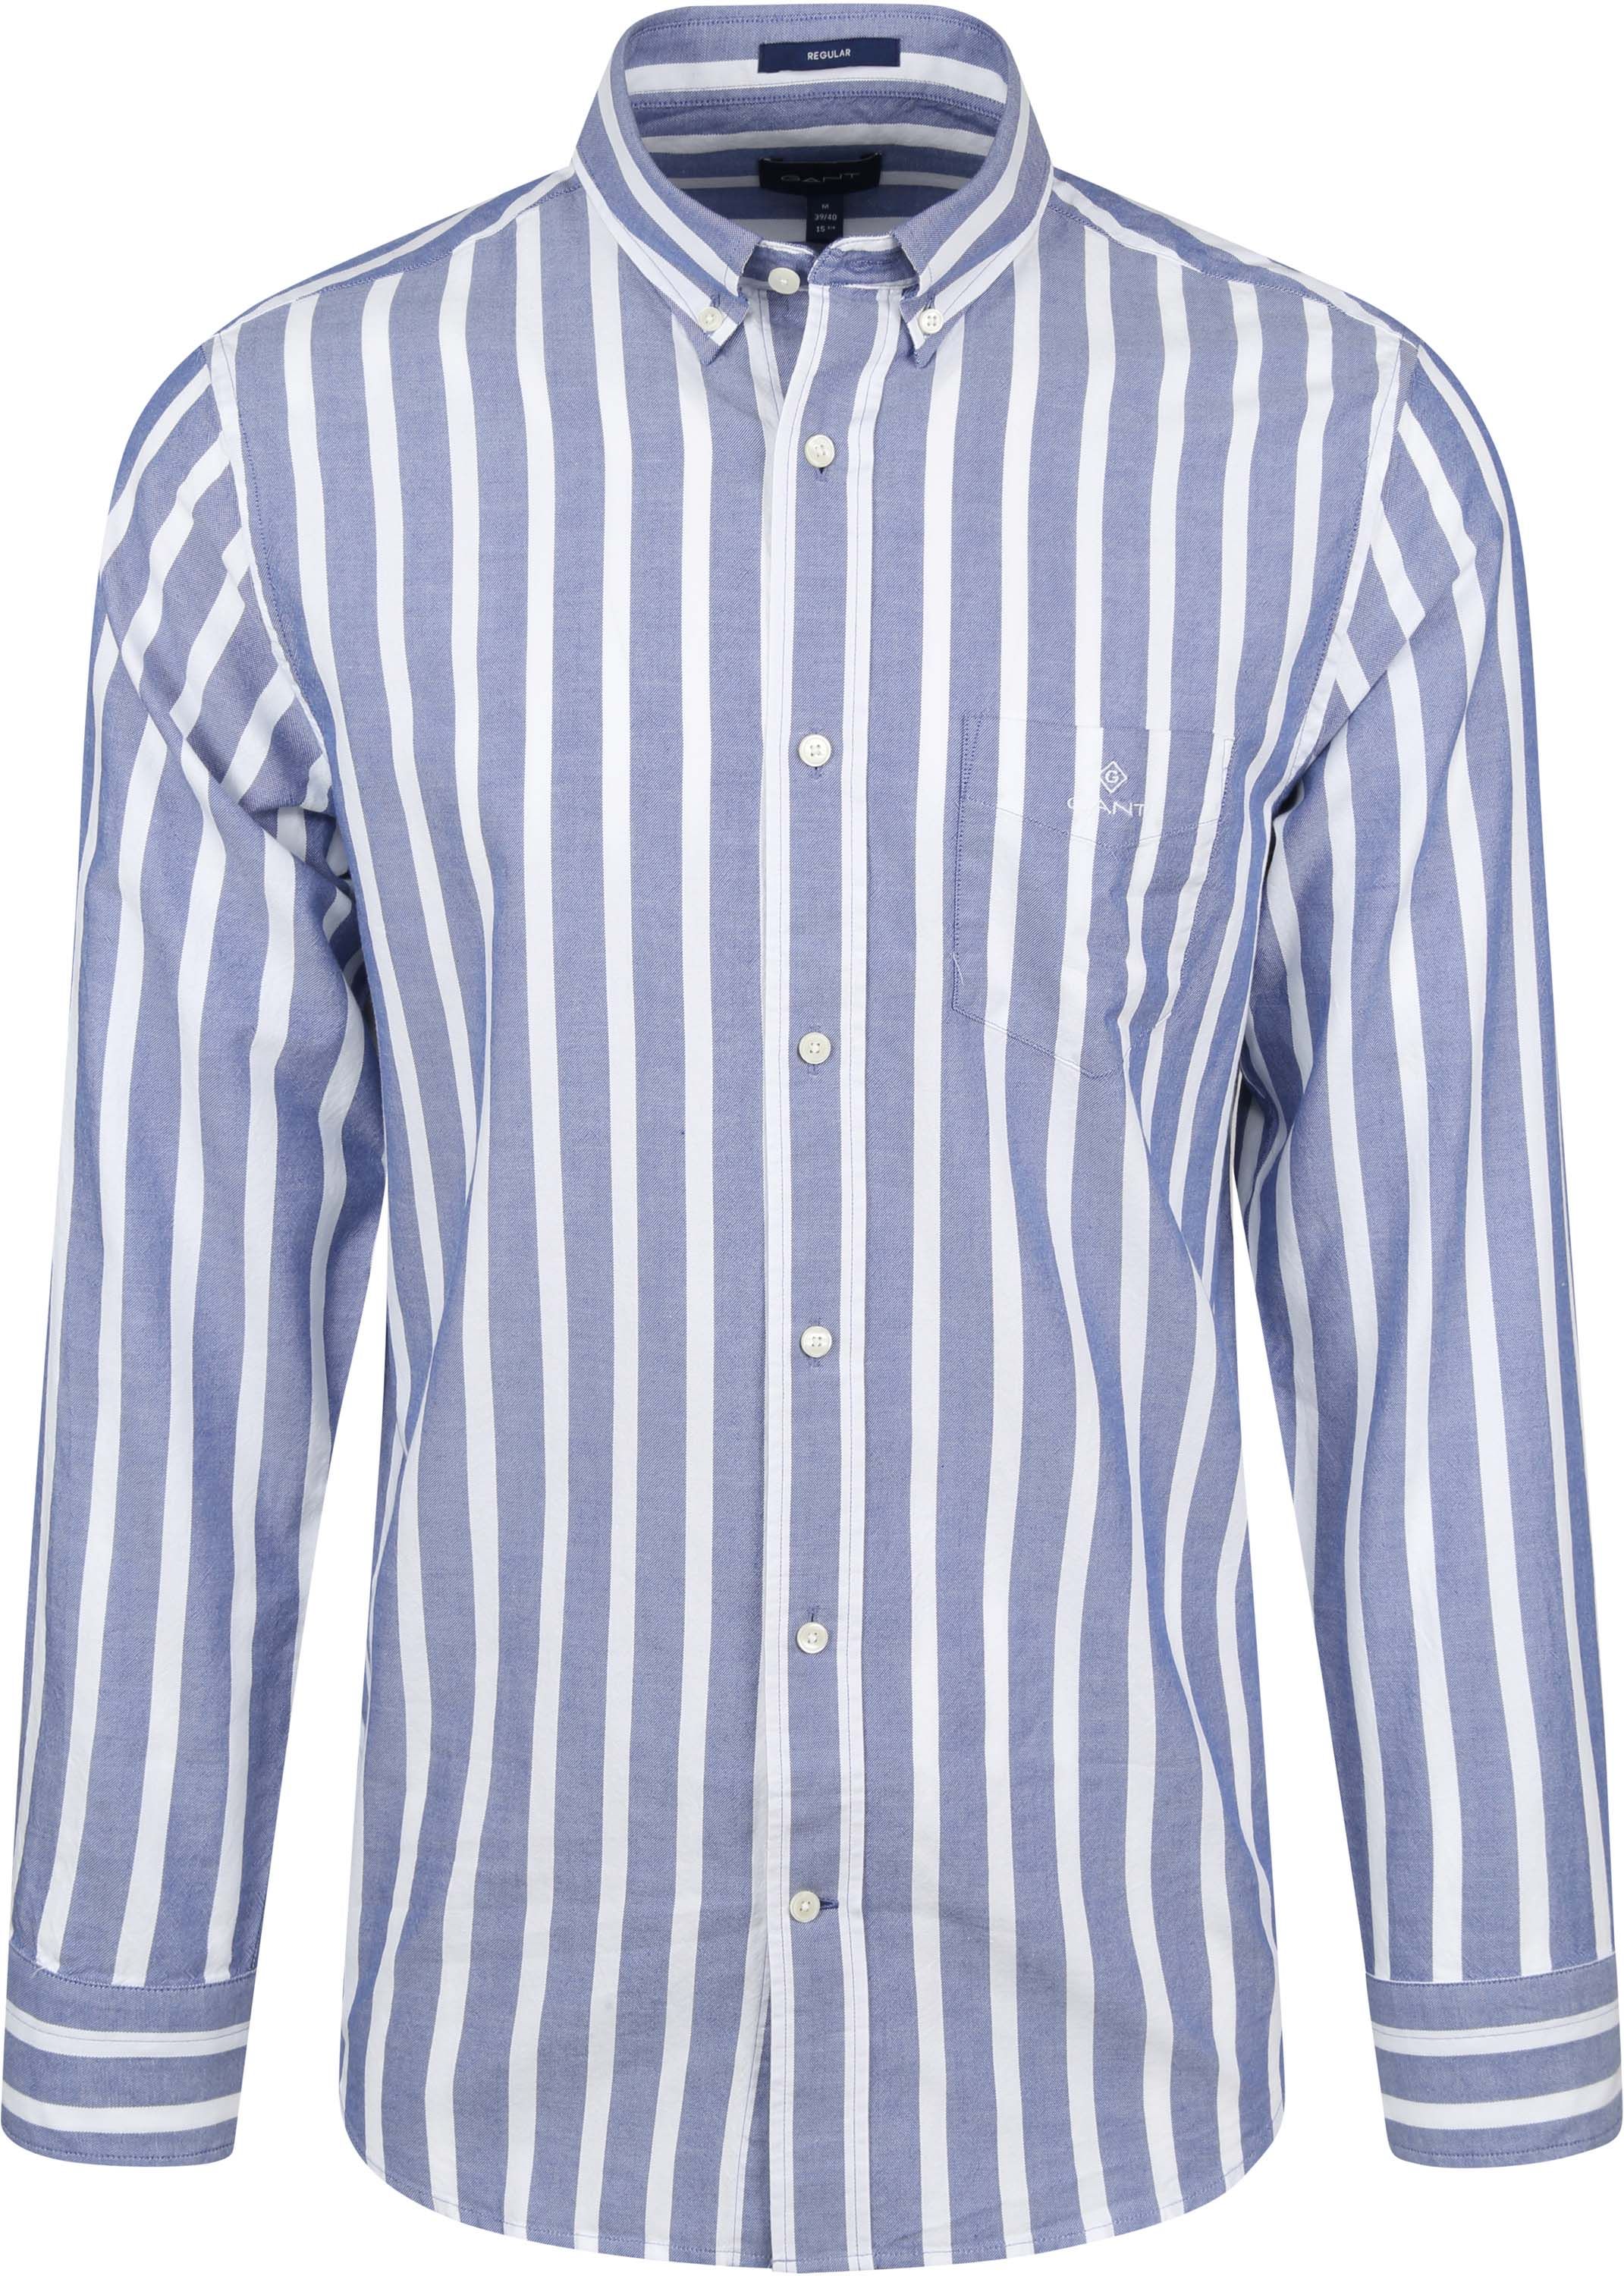 Gant Oxford Shirt Stripes Blue size M